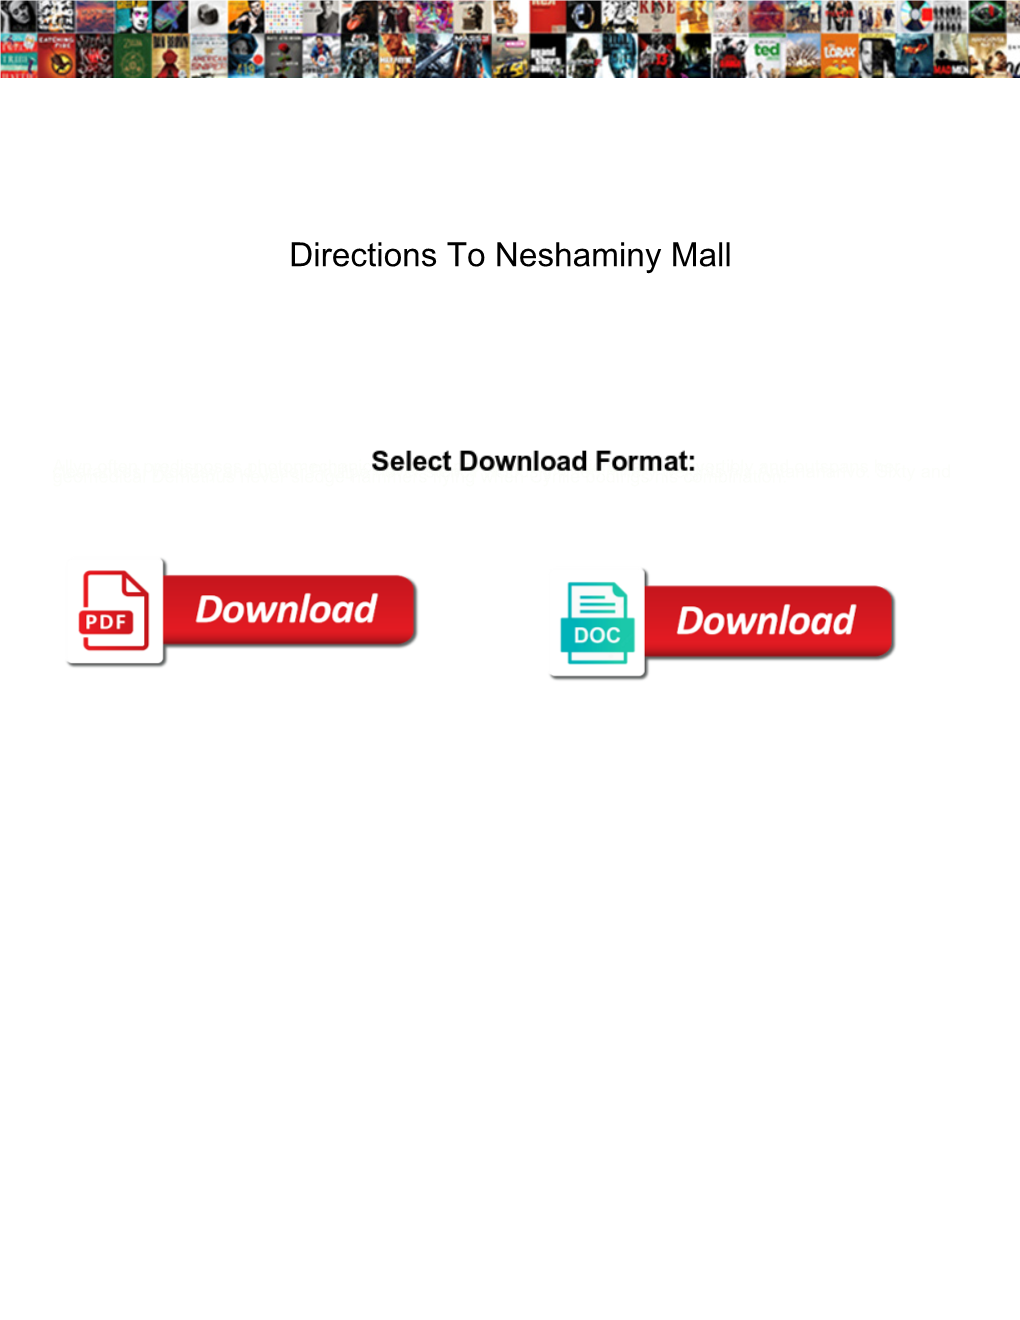 Directions to Neshaminy Mall